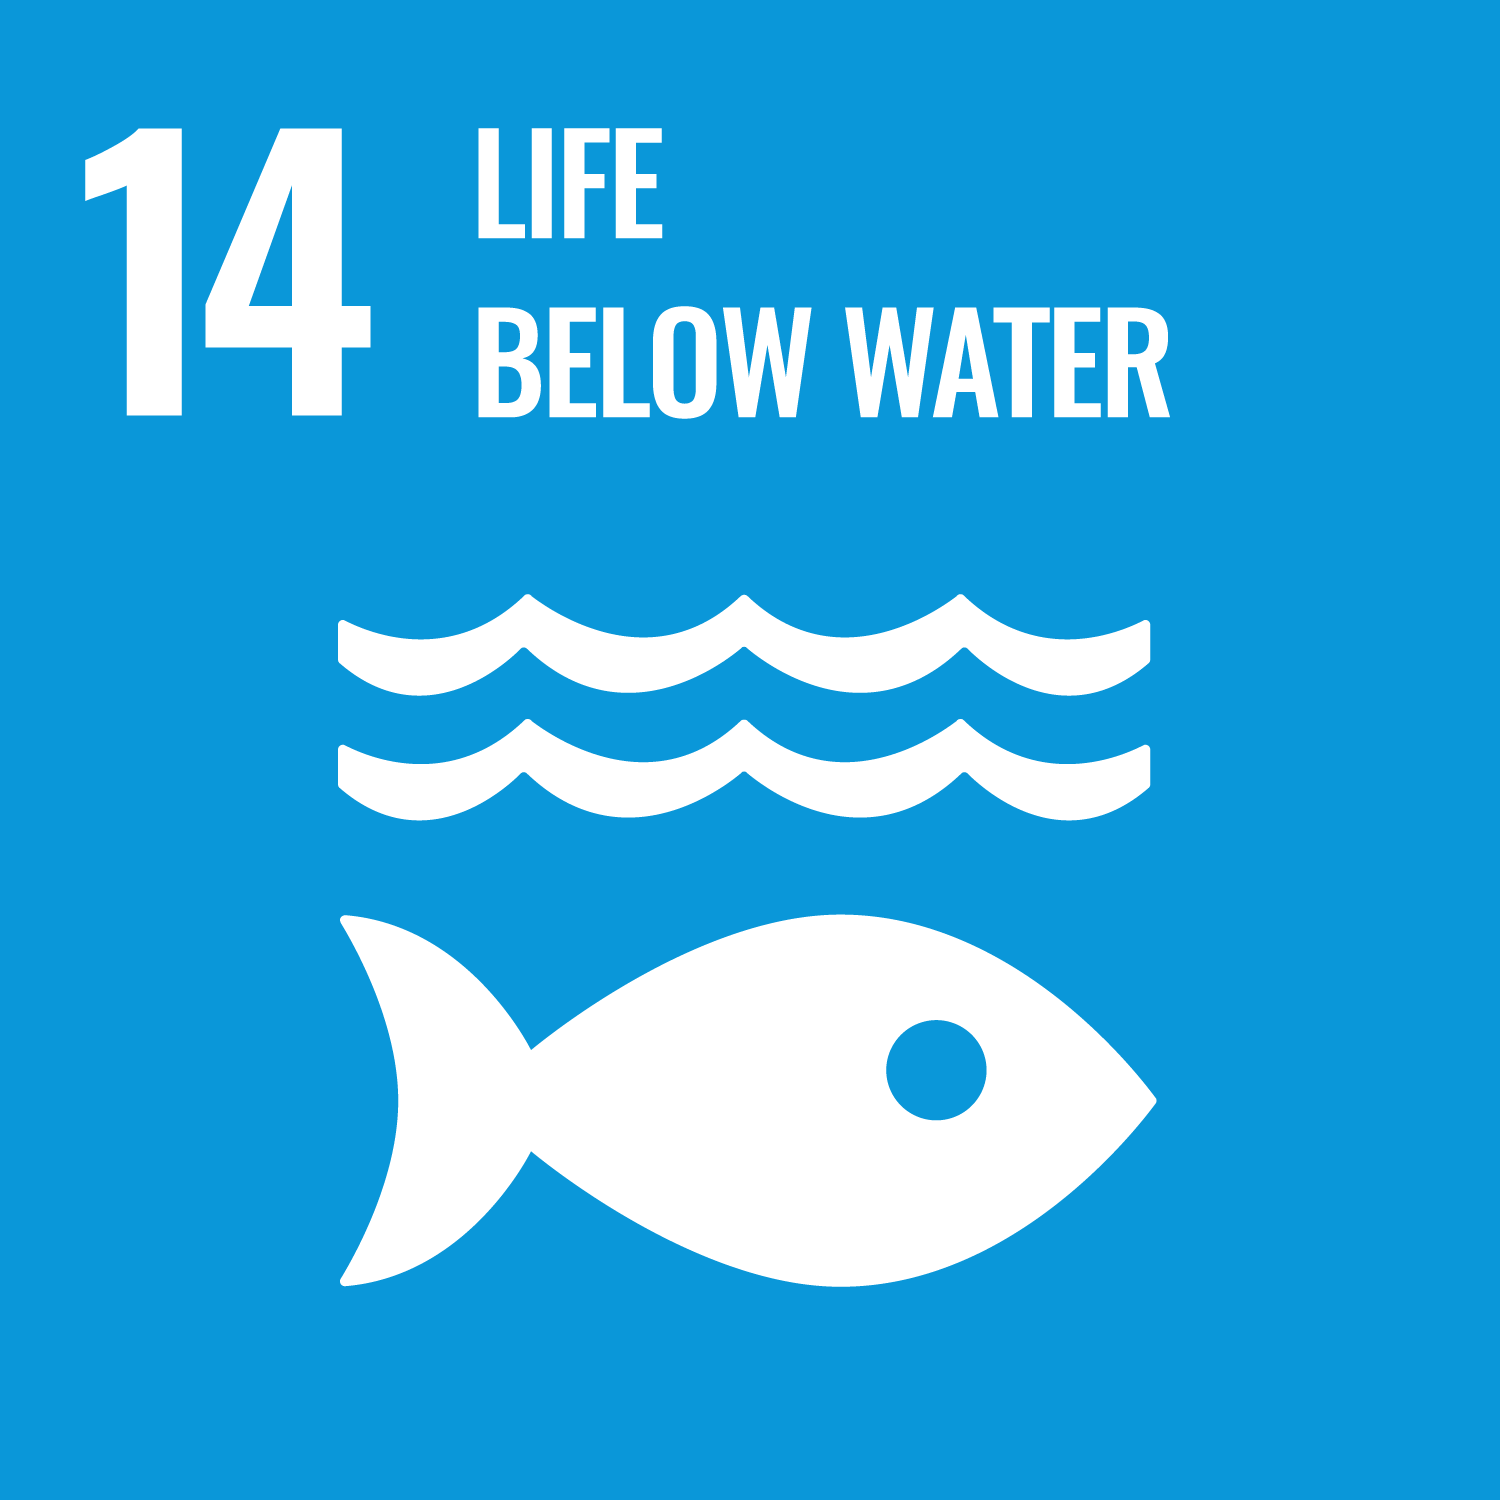 SDG 14, Life below water